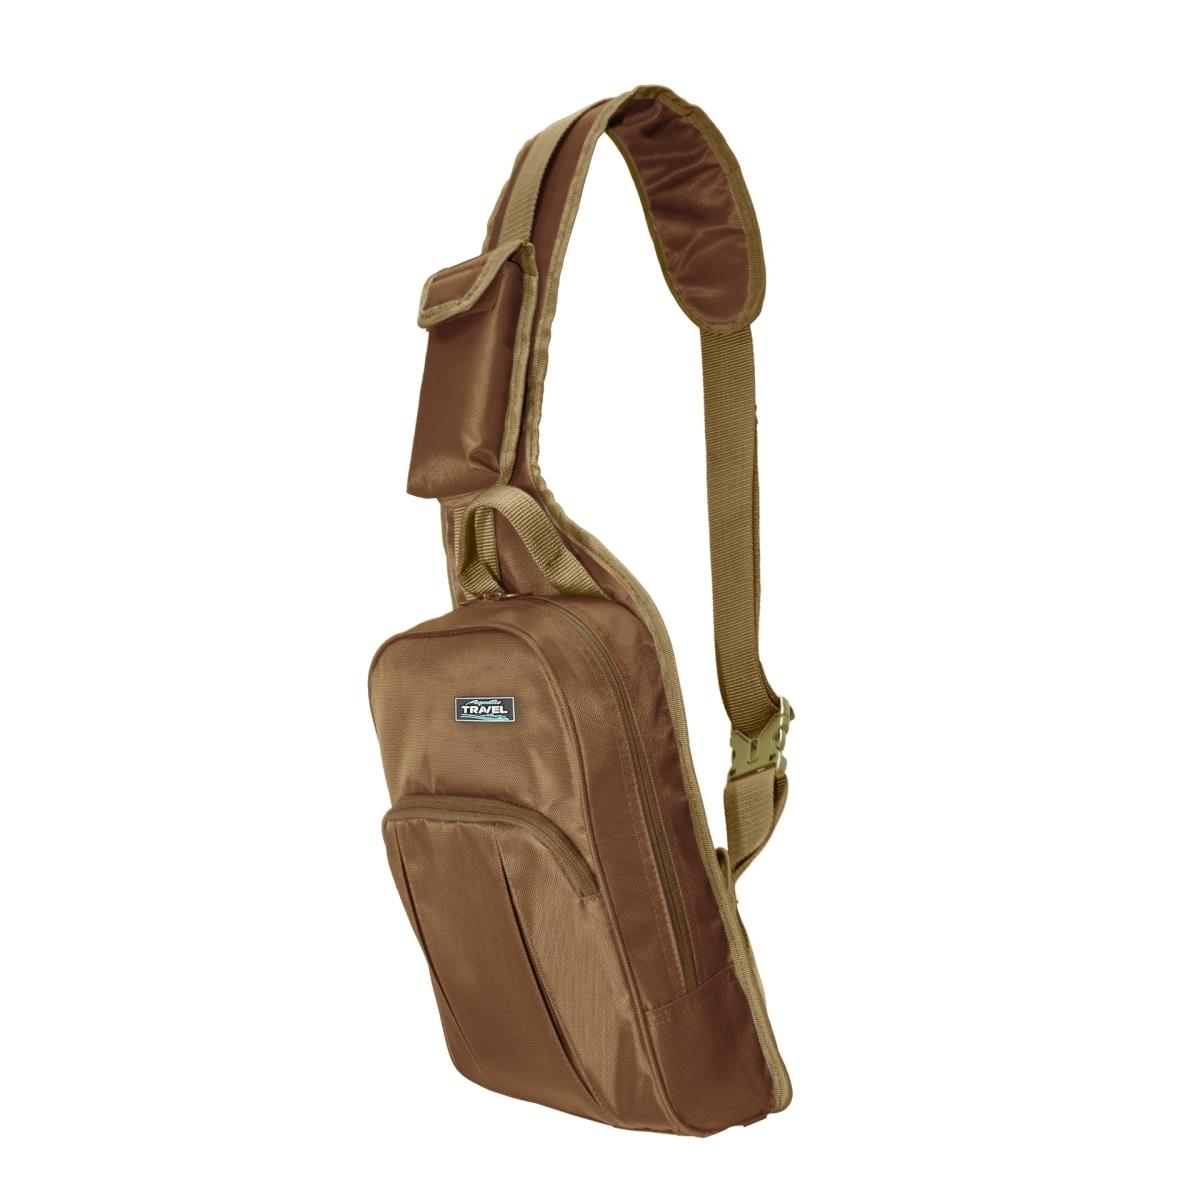 Сумка С-32К коричичневая AQUATIC сумка тоут на молнии наружный карман коричневый